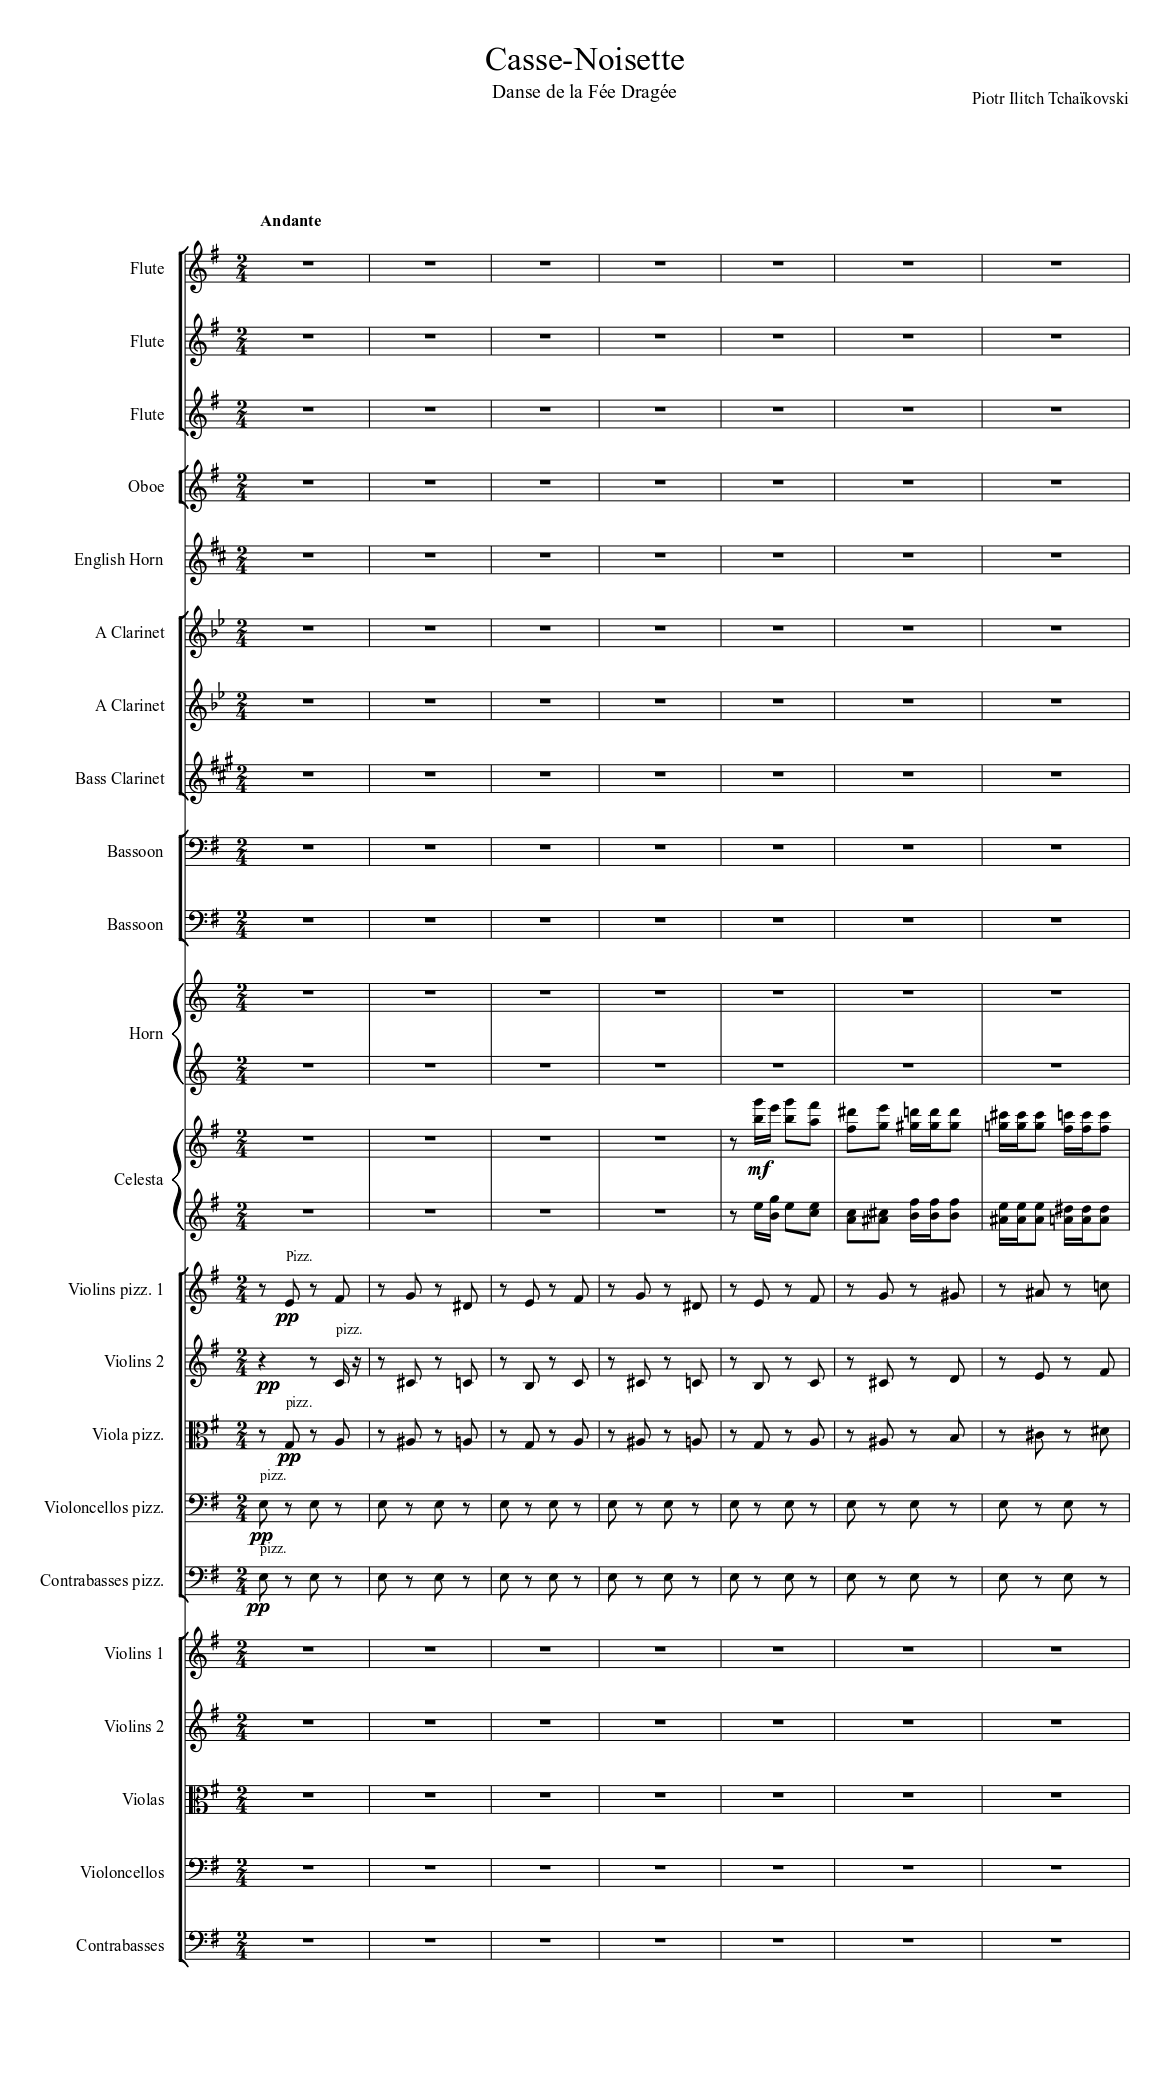 Casse-Noisette, Danse de la Fée Dragée Sheet music for Flute, Oboe, Bassoon  (Woodwind Ensemble) | Musescore.com